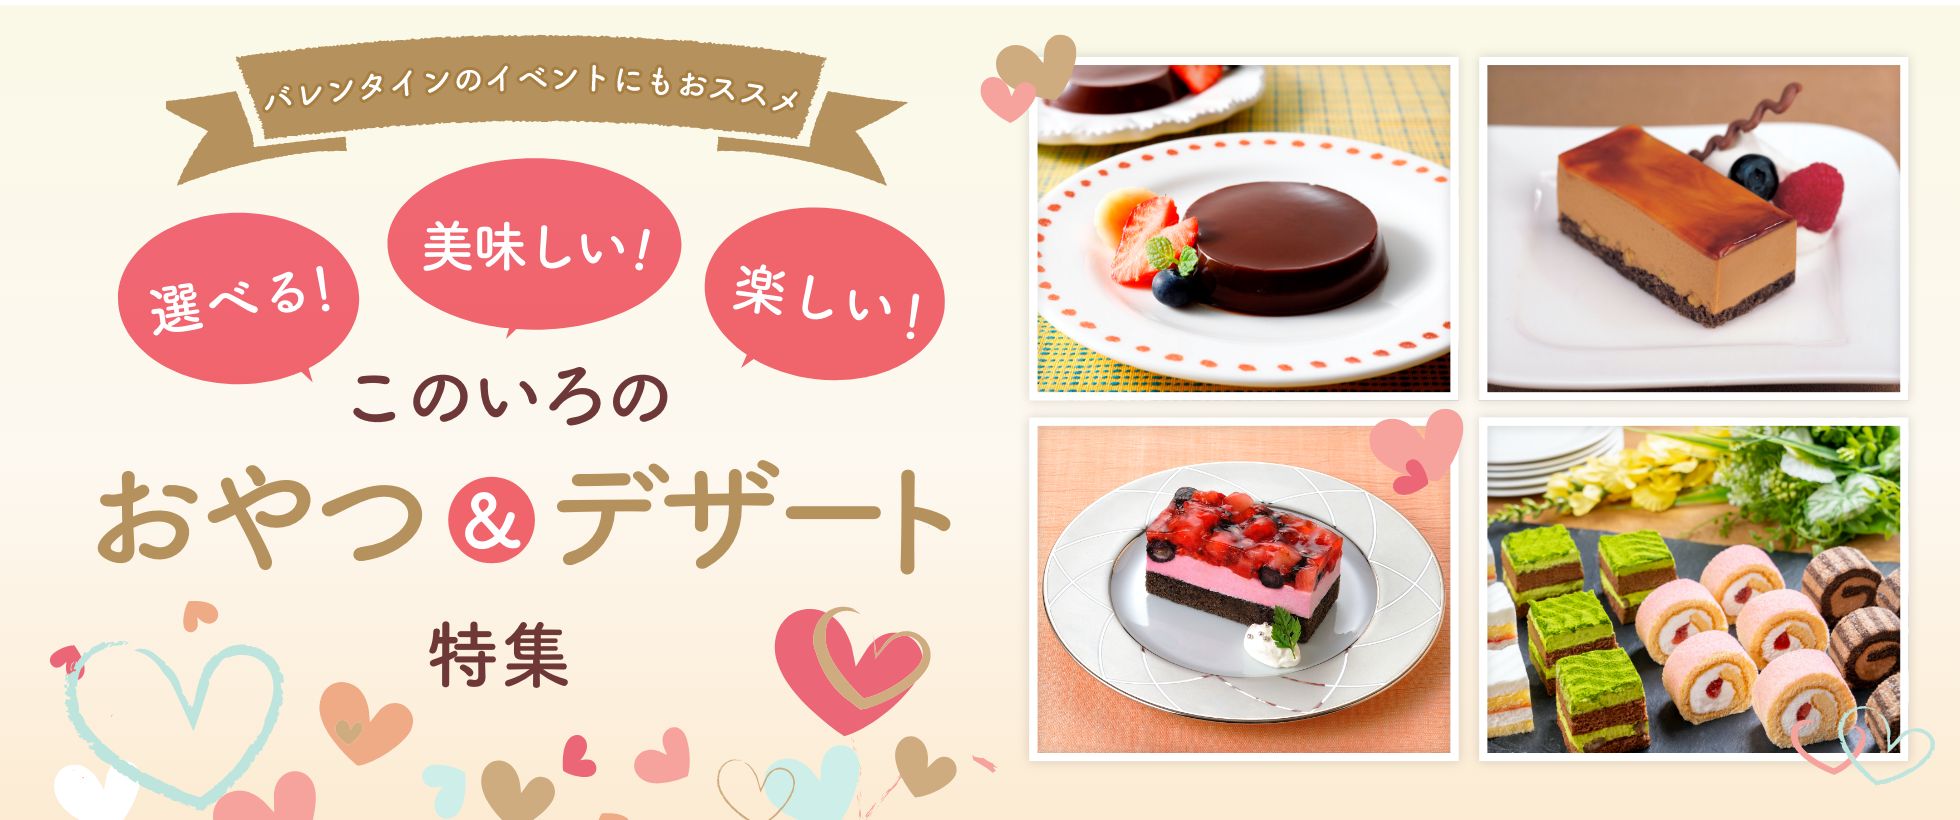 【リリース】ケーキ商品のラインナップ拡大